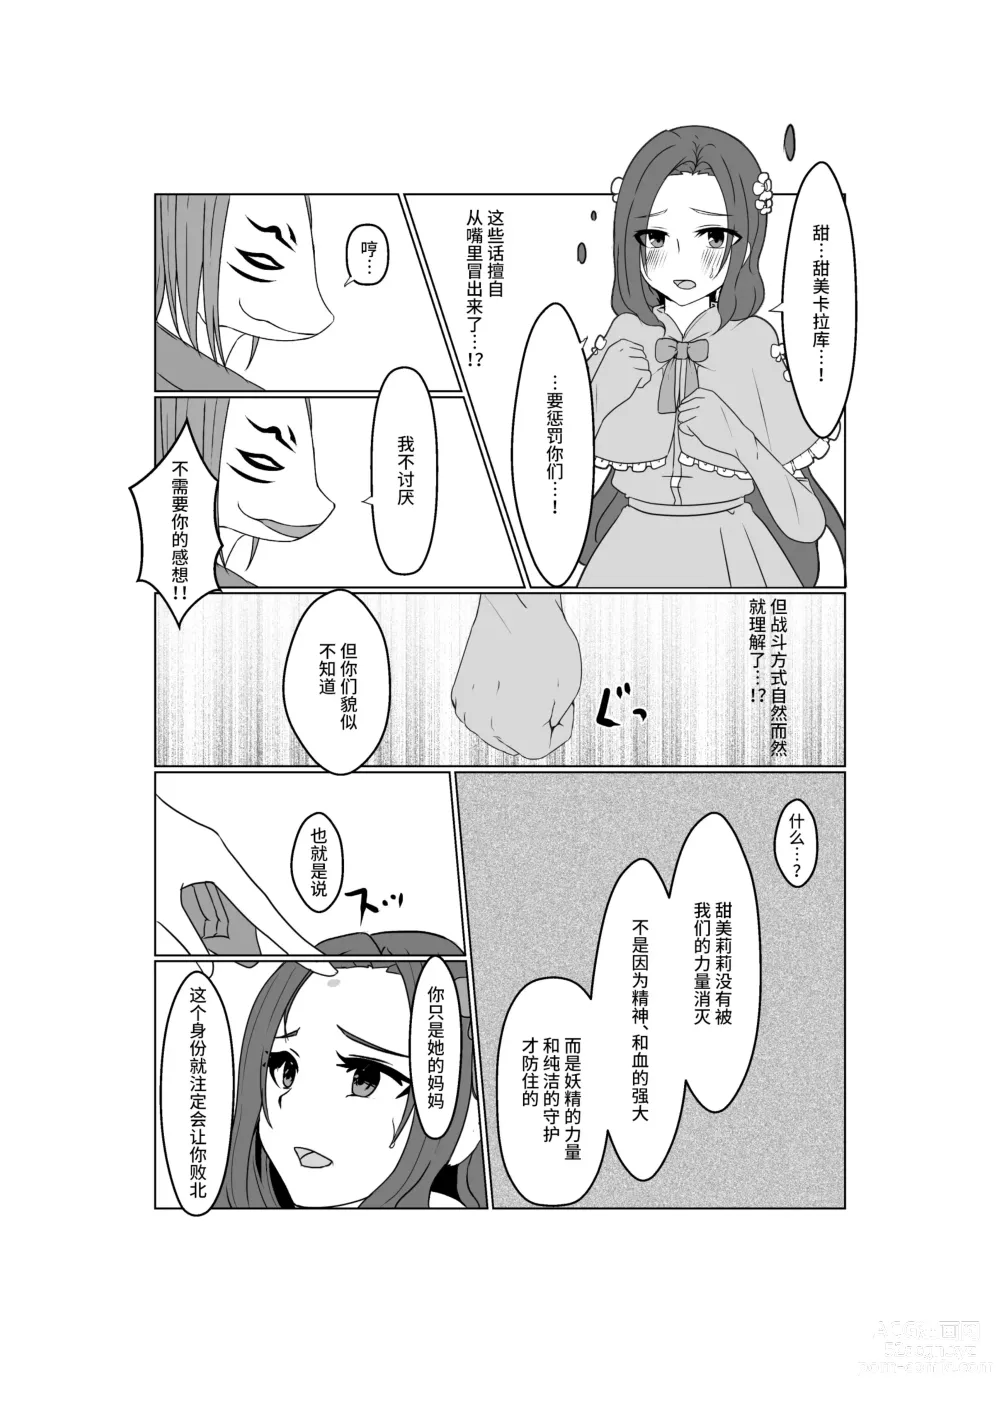 Page 62 of doujinshi Aku no Hana Vol.3 Skeb+α Matome